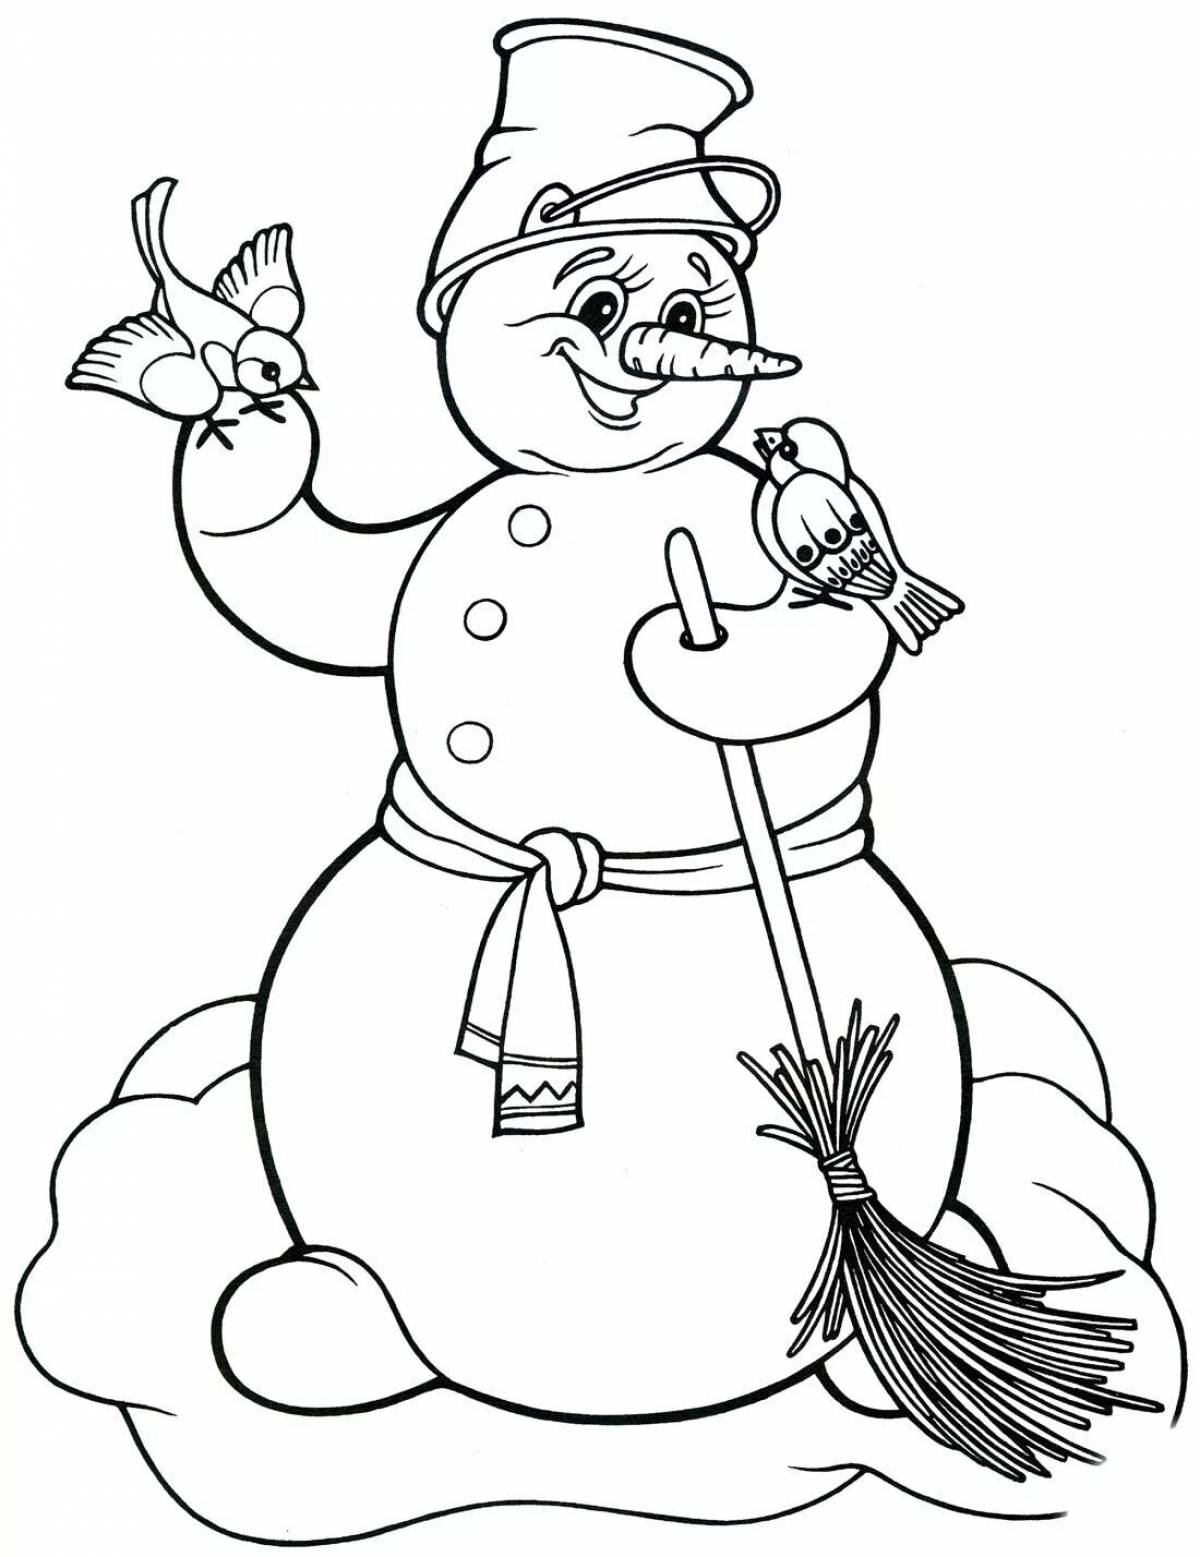 Веселый снеговик для детей #8